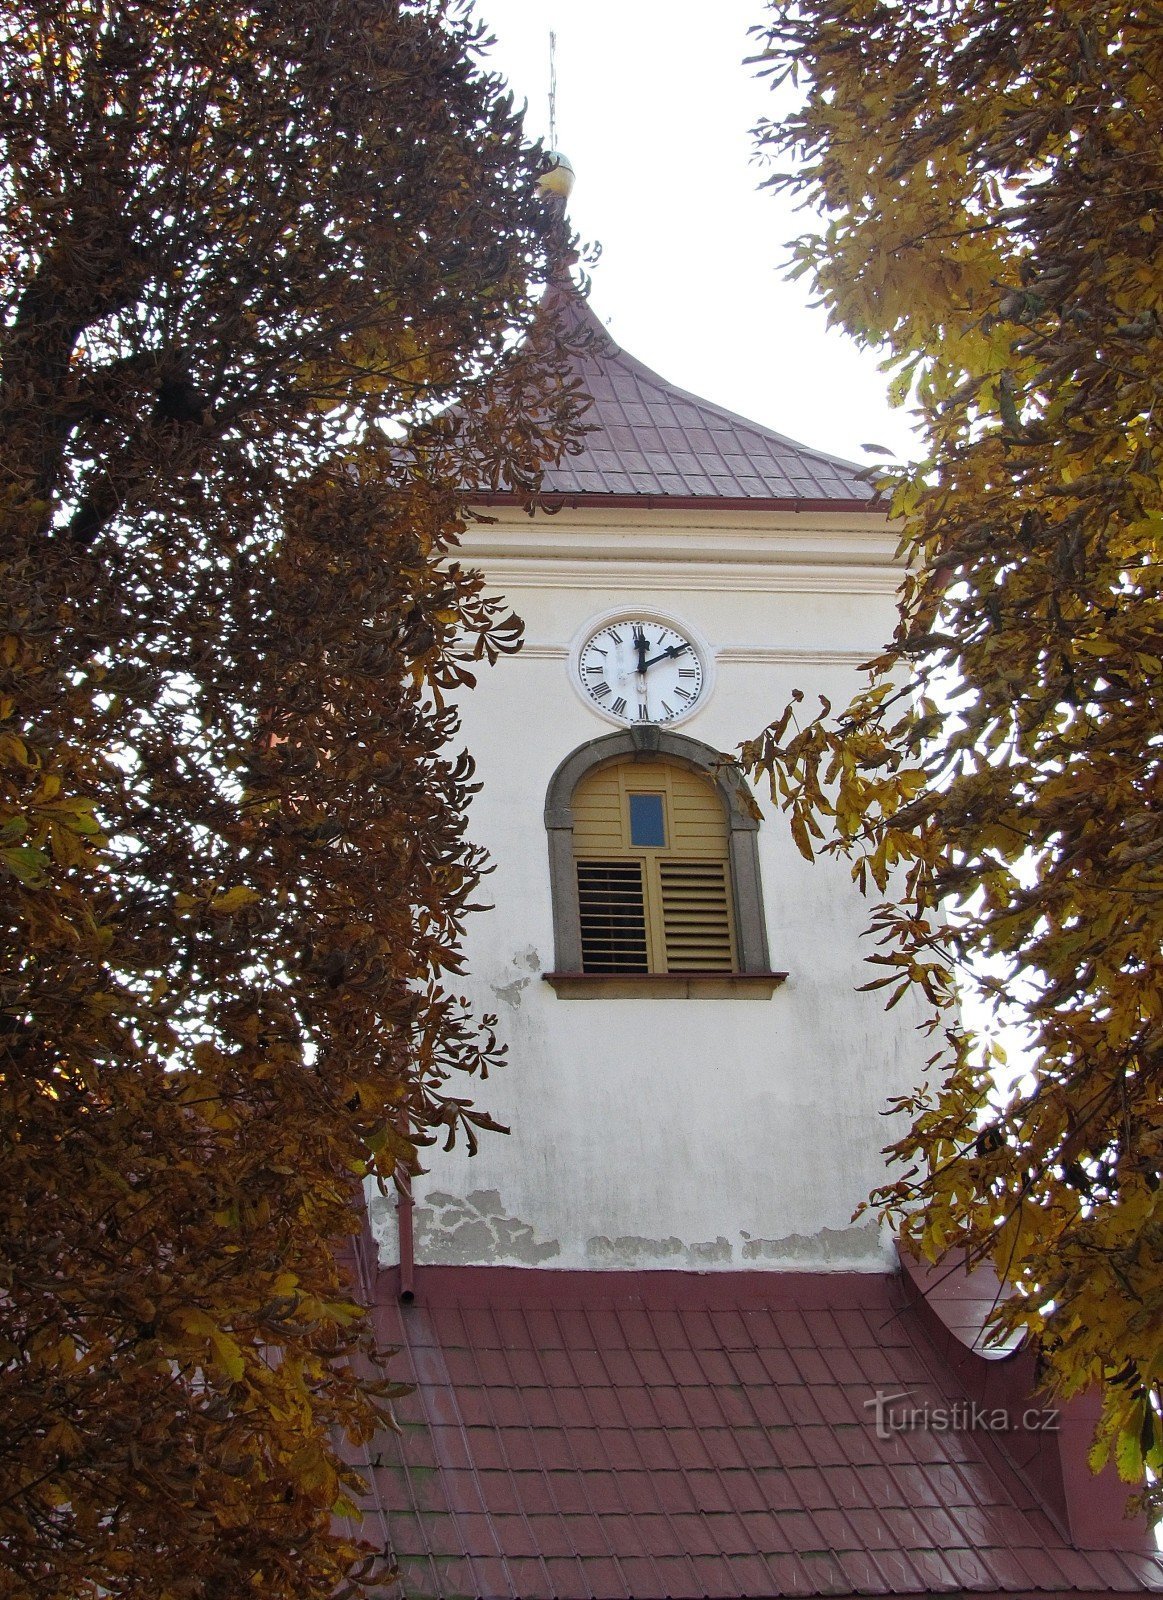 Під кашавською церквою астрономічний годинник